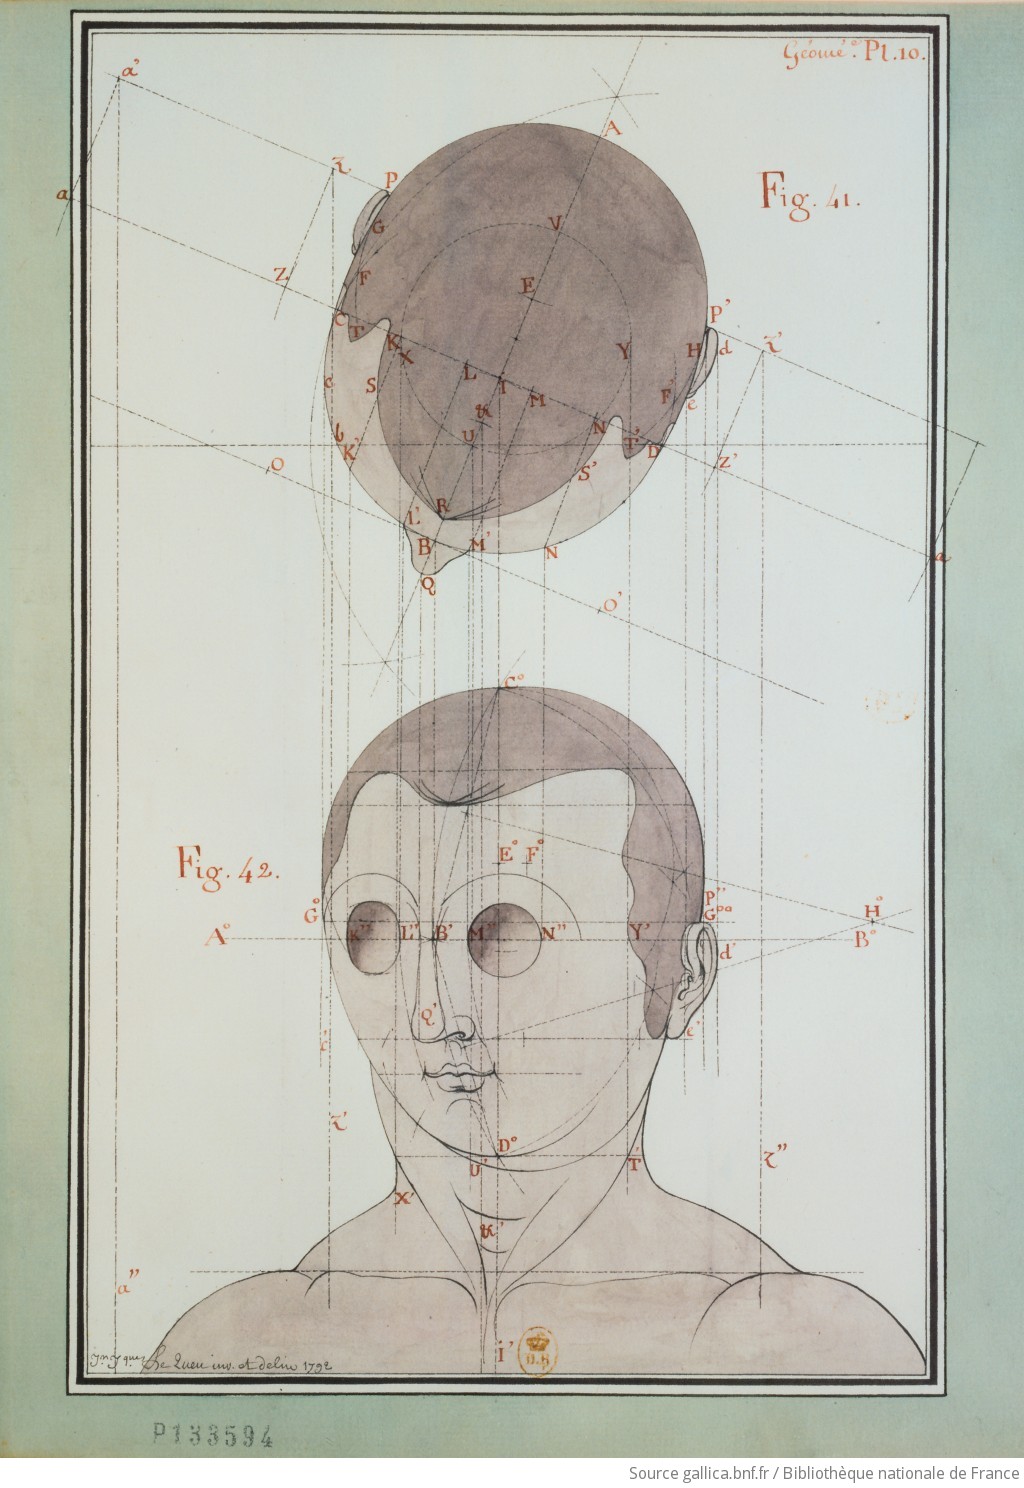 [Etude d'une tête humaine, vue de dessus et de trois-quart] : [dessin] / Jn Jques Le Queu inv. et delin. 1792 - 1